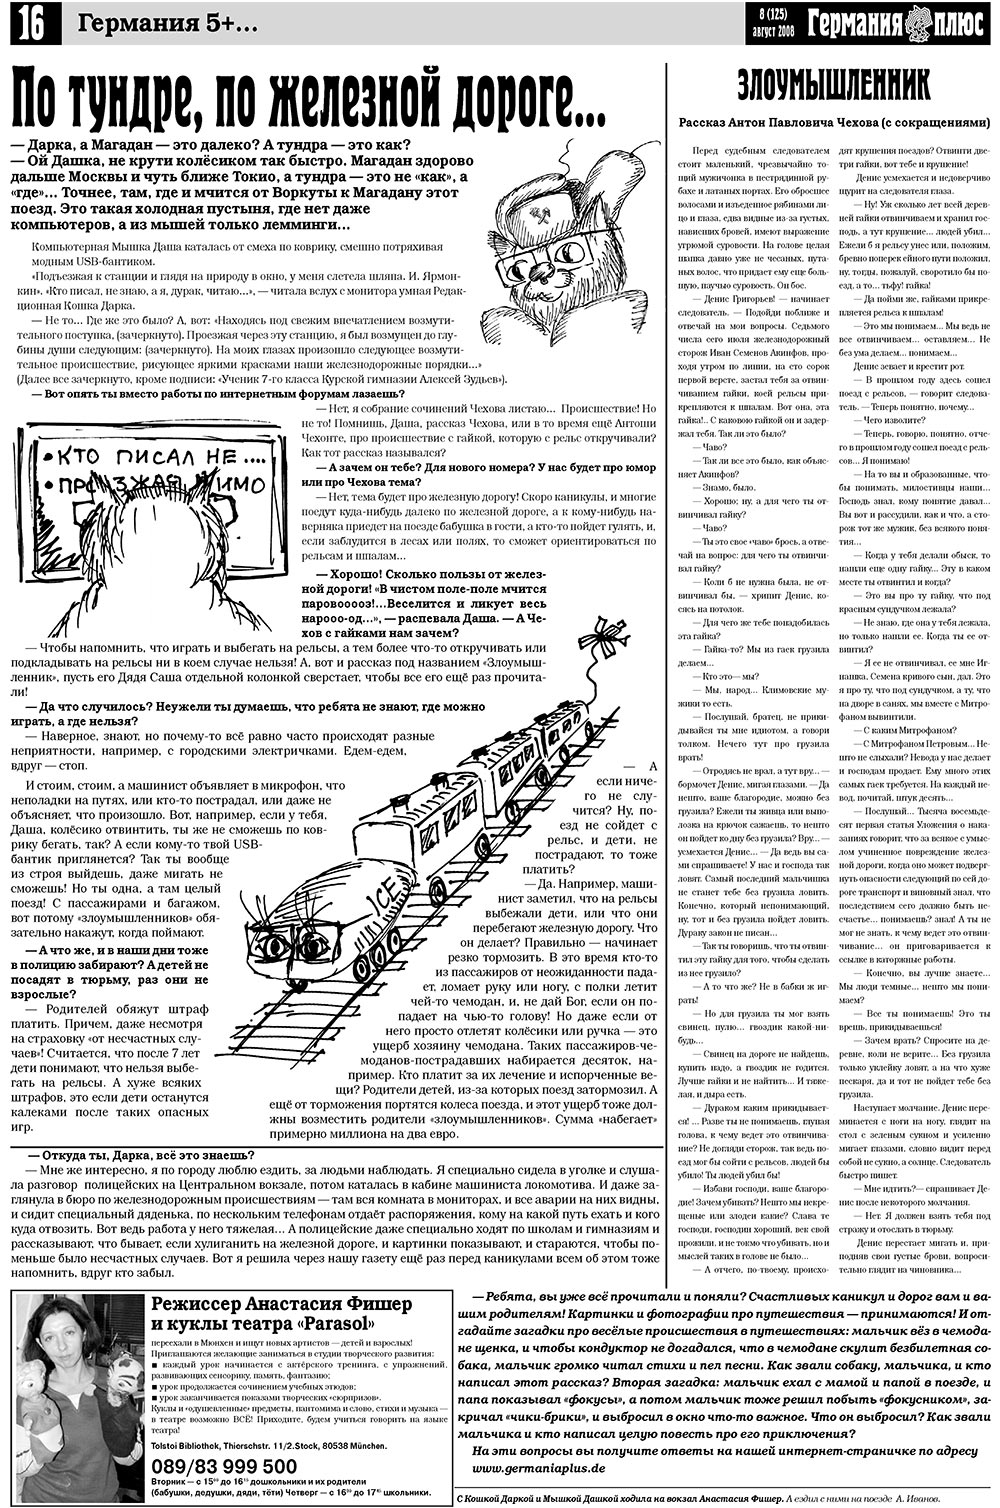 Германия плюс, газета. 2008 №8 стр.20